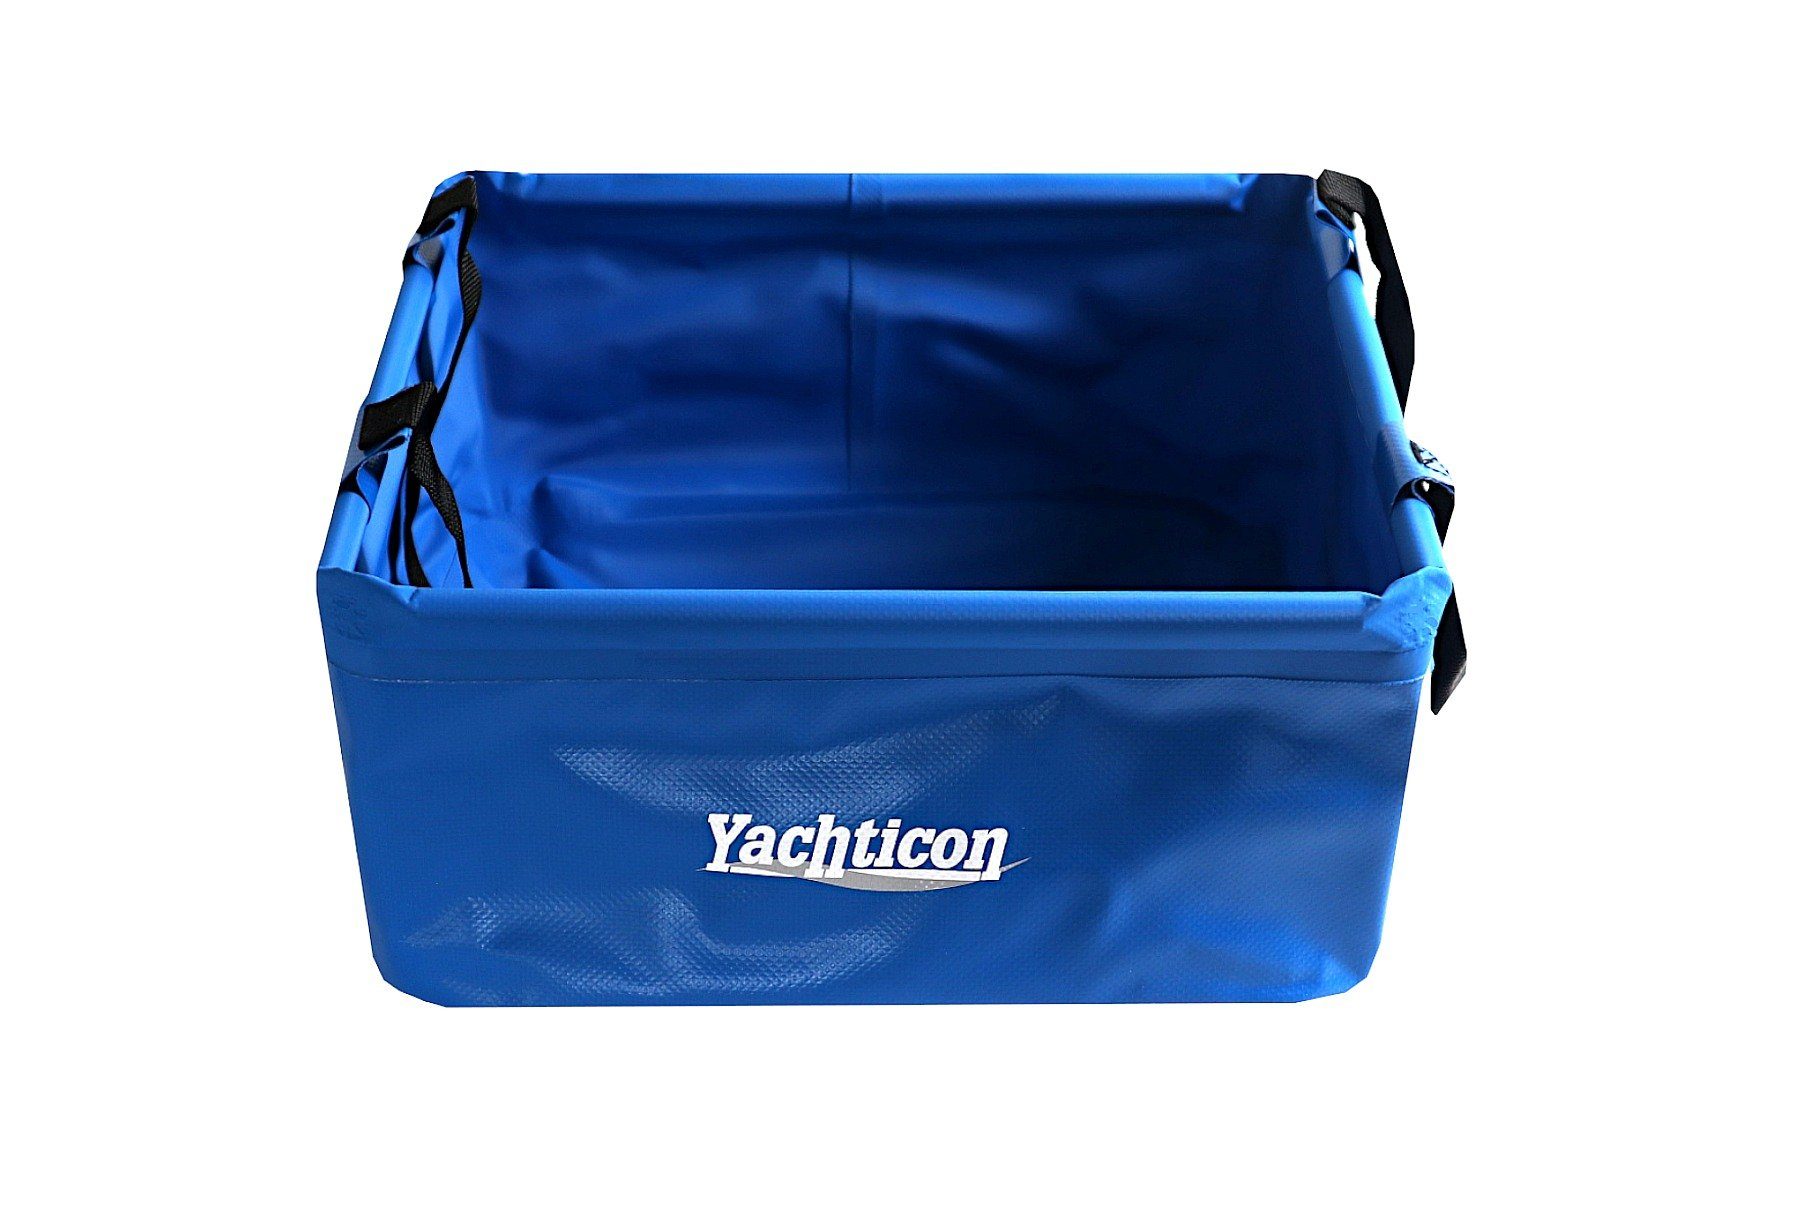 YACHTICON A. Nagel GmbH Waschschüssel Yachticon Faltschüssel 15 Liter